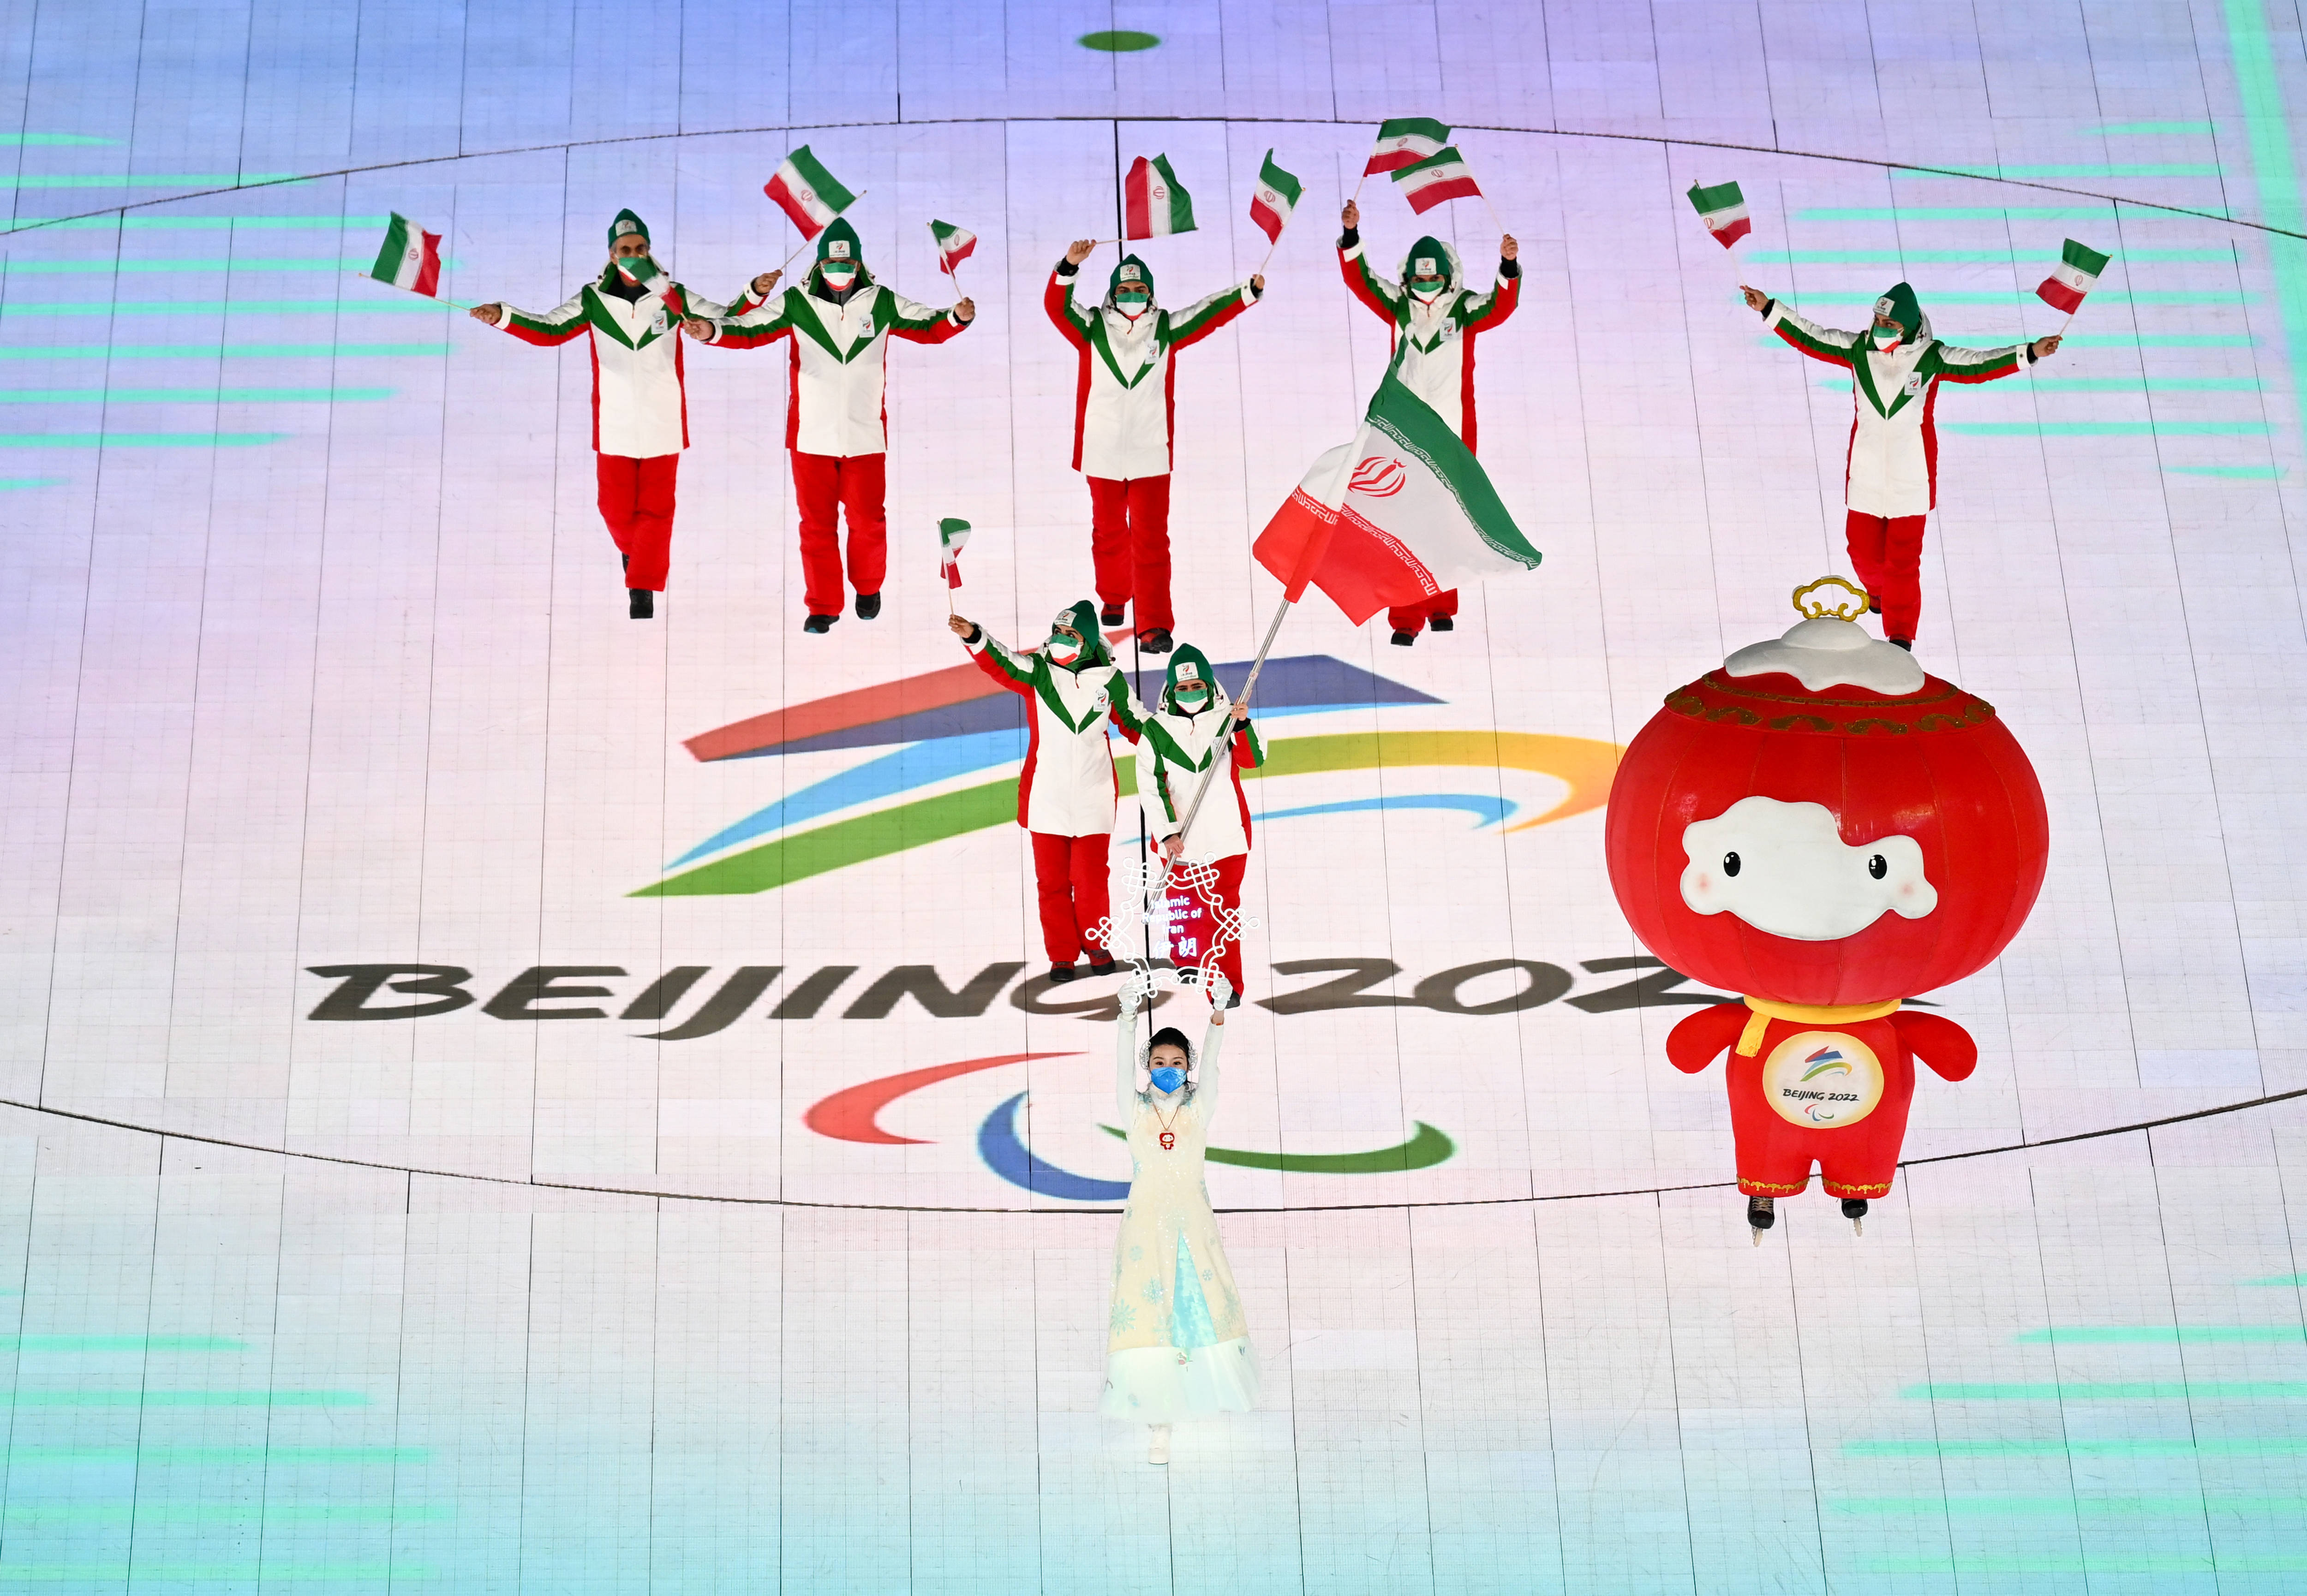 北京冬季残奥会标志图片